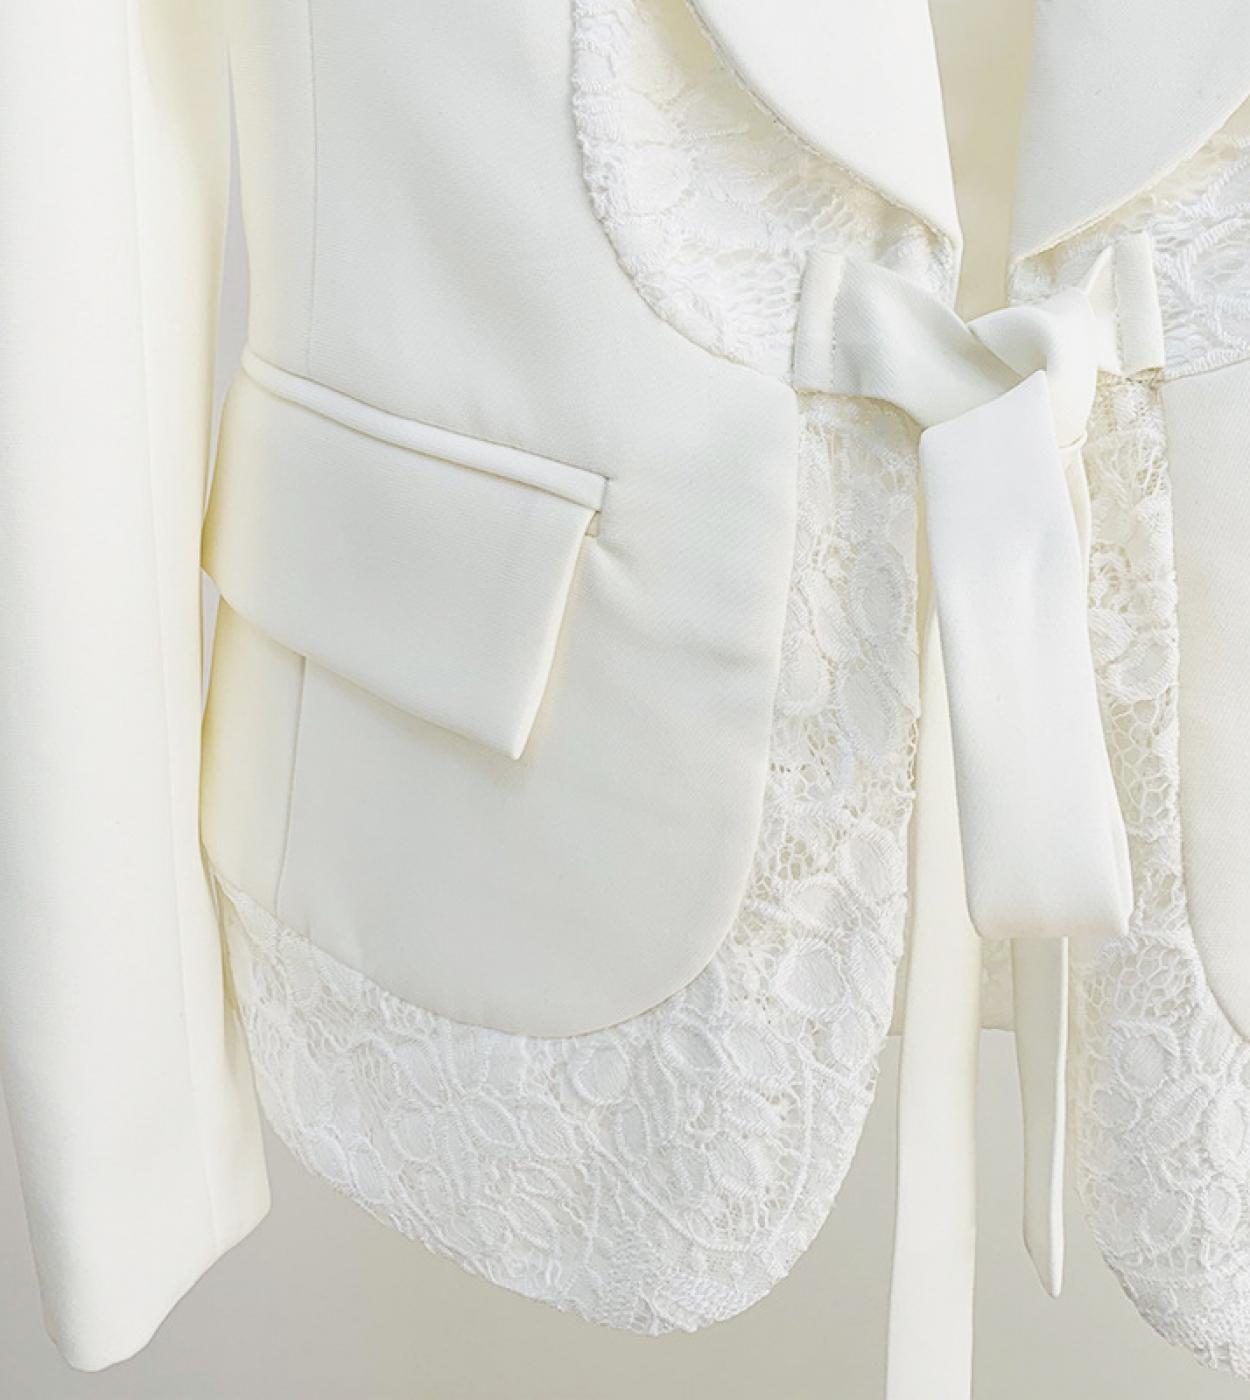 100,79 US$-Conjunto de traje formal para mujer Blazers Pantalones Blanco Mujer  Elegante traje de pantalón blanco Blazer-Description